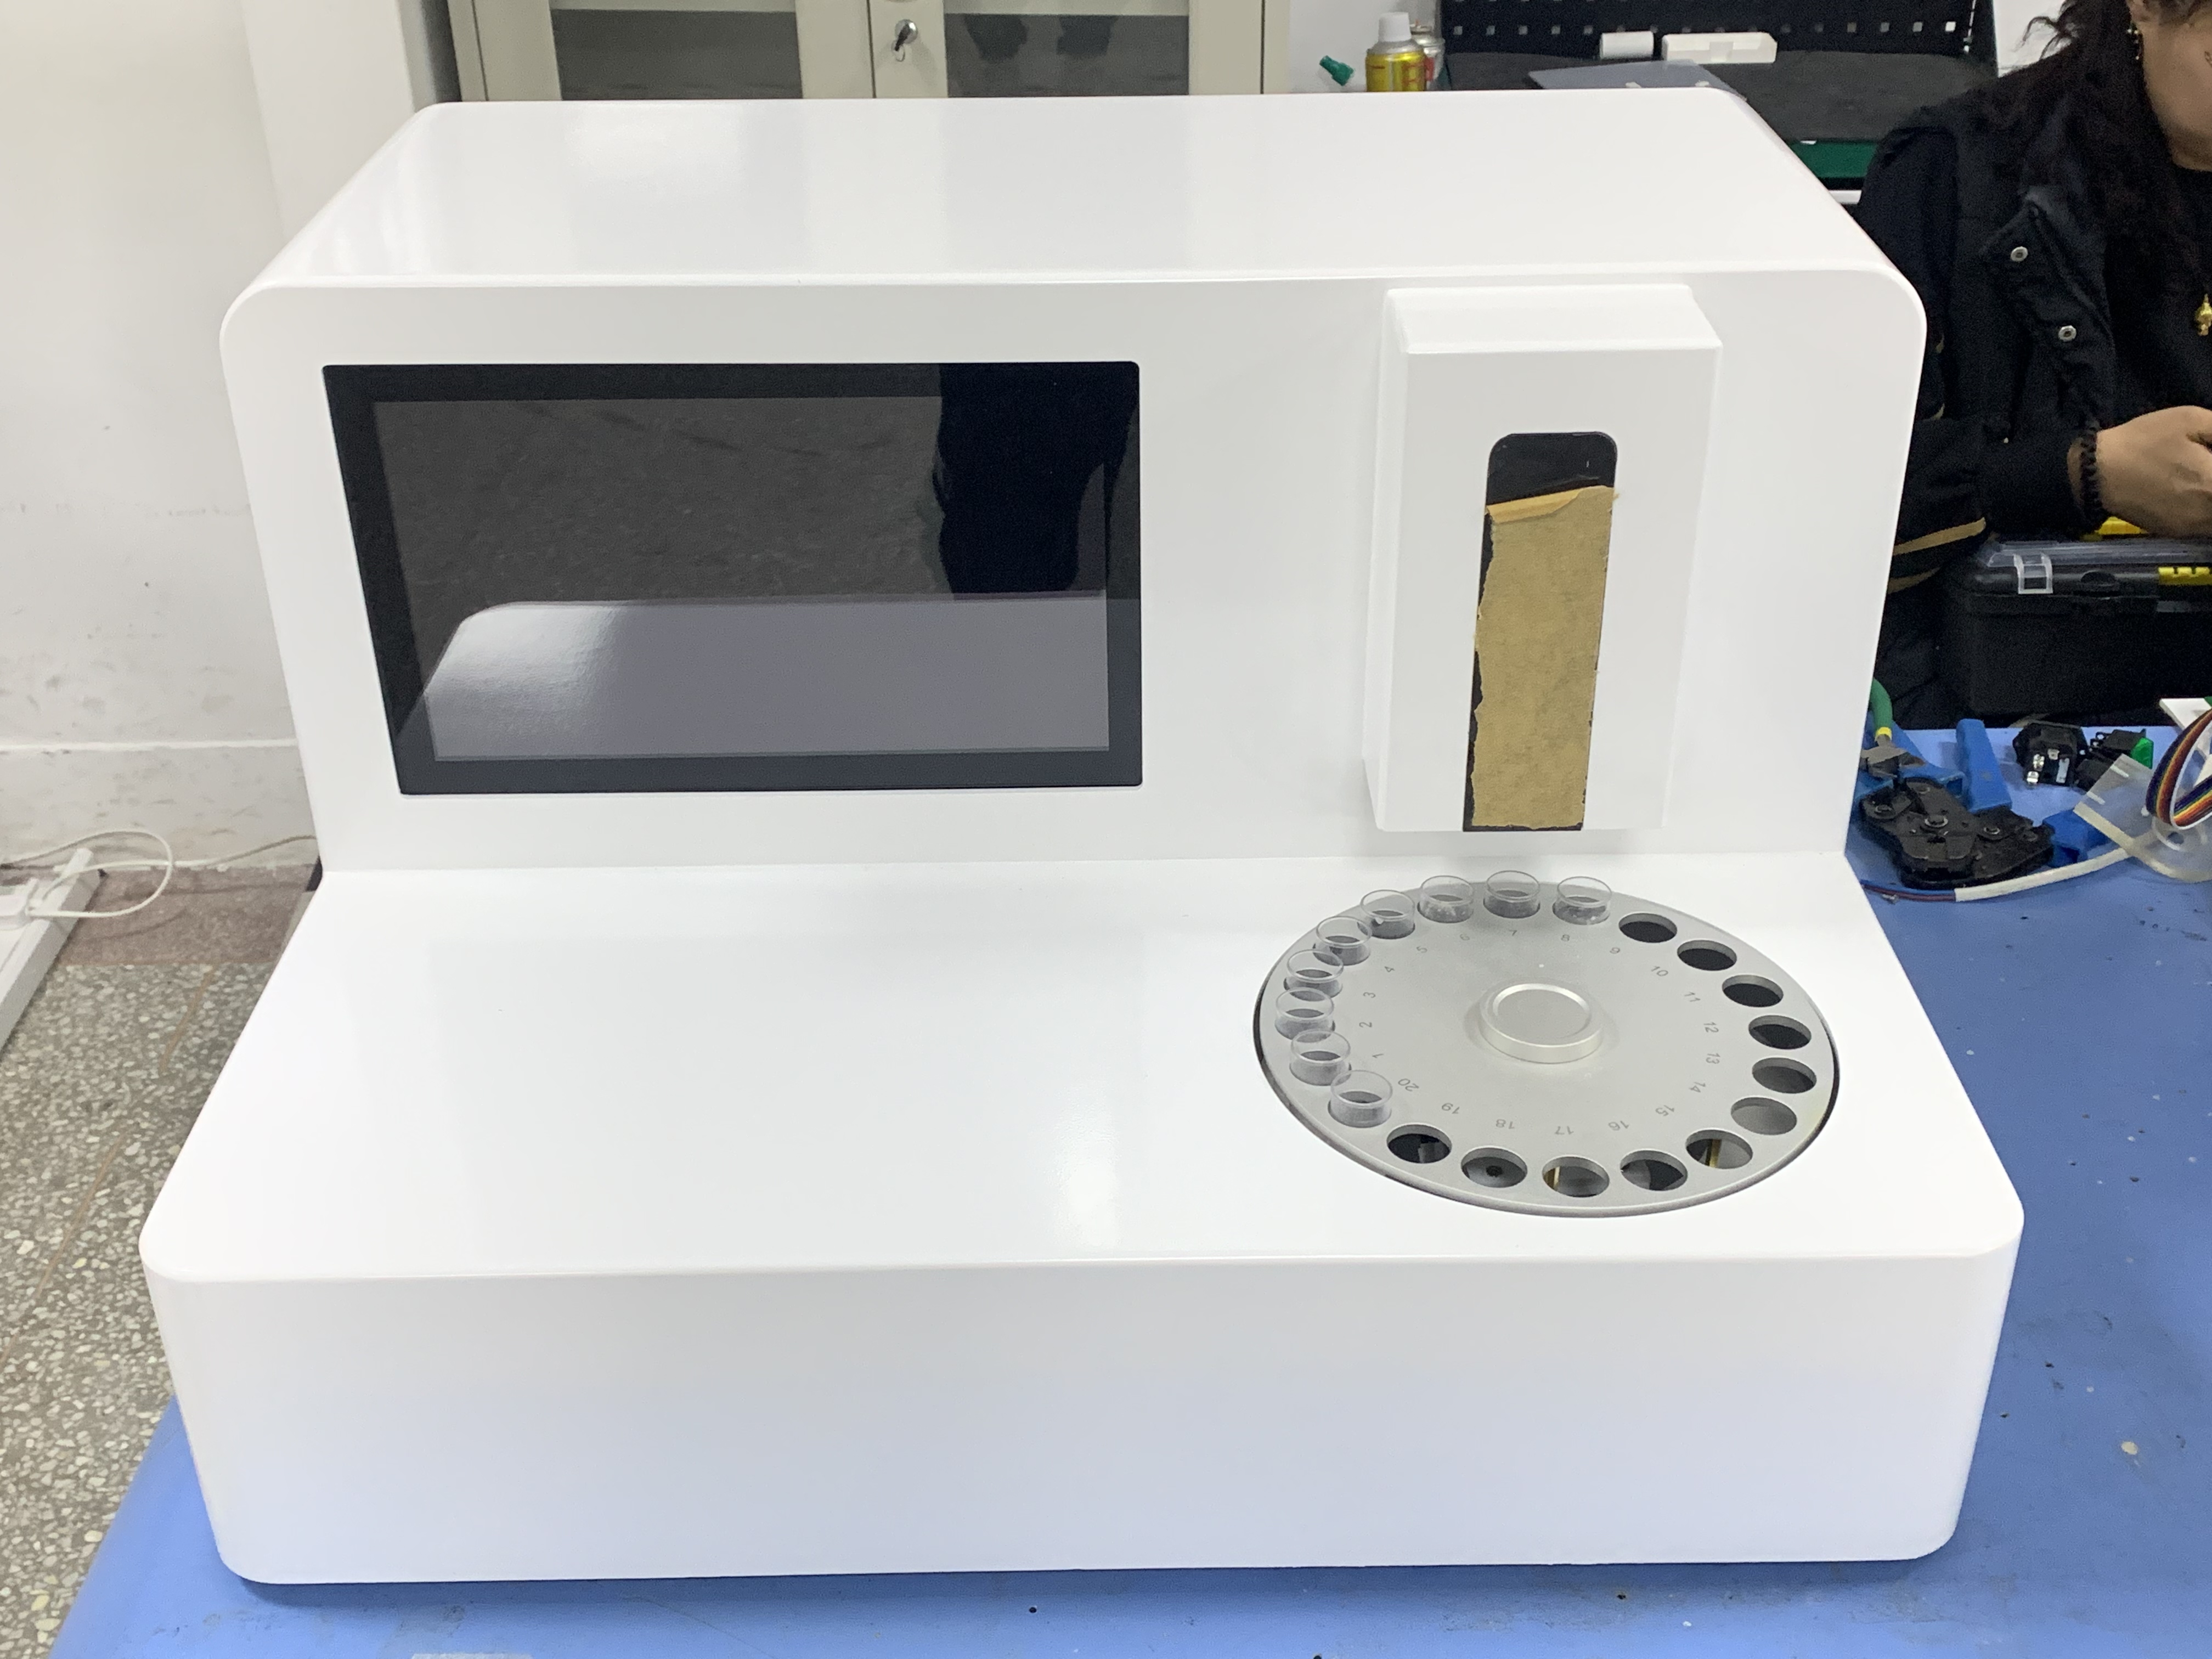 5.12GK-9100母乳分析仪在四川成都双流区西航港社区医院完成装机培训指导